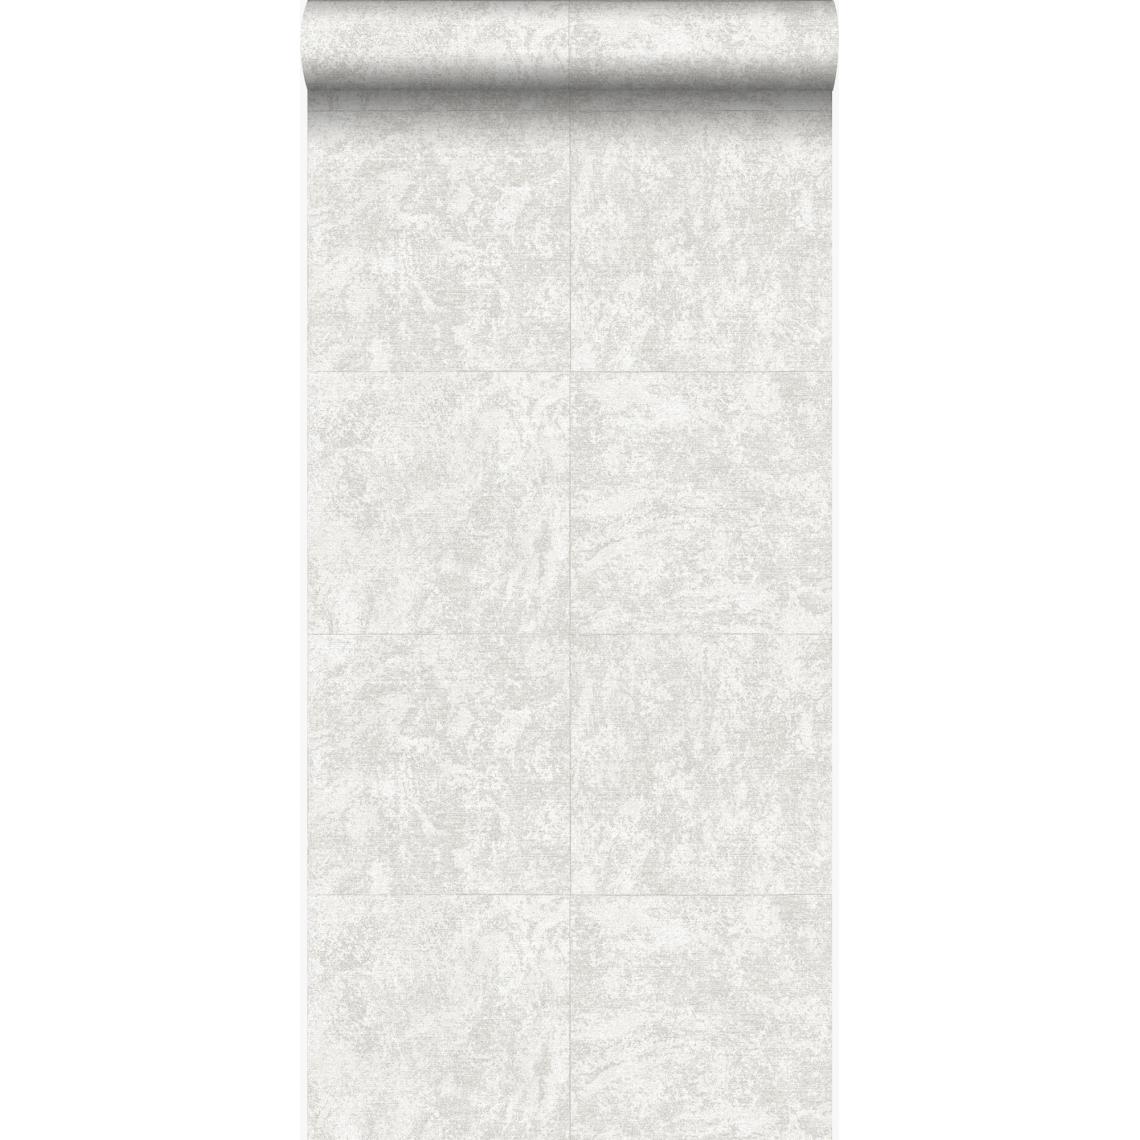 Origin - Origin papier peint brique Ivoire foncé blanc - 347408 - 53 cm x 10,05 m - Papier peint